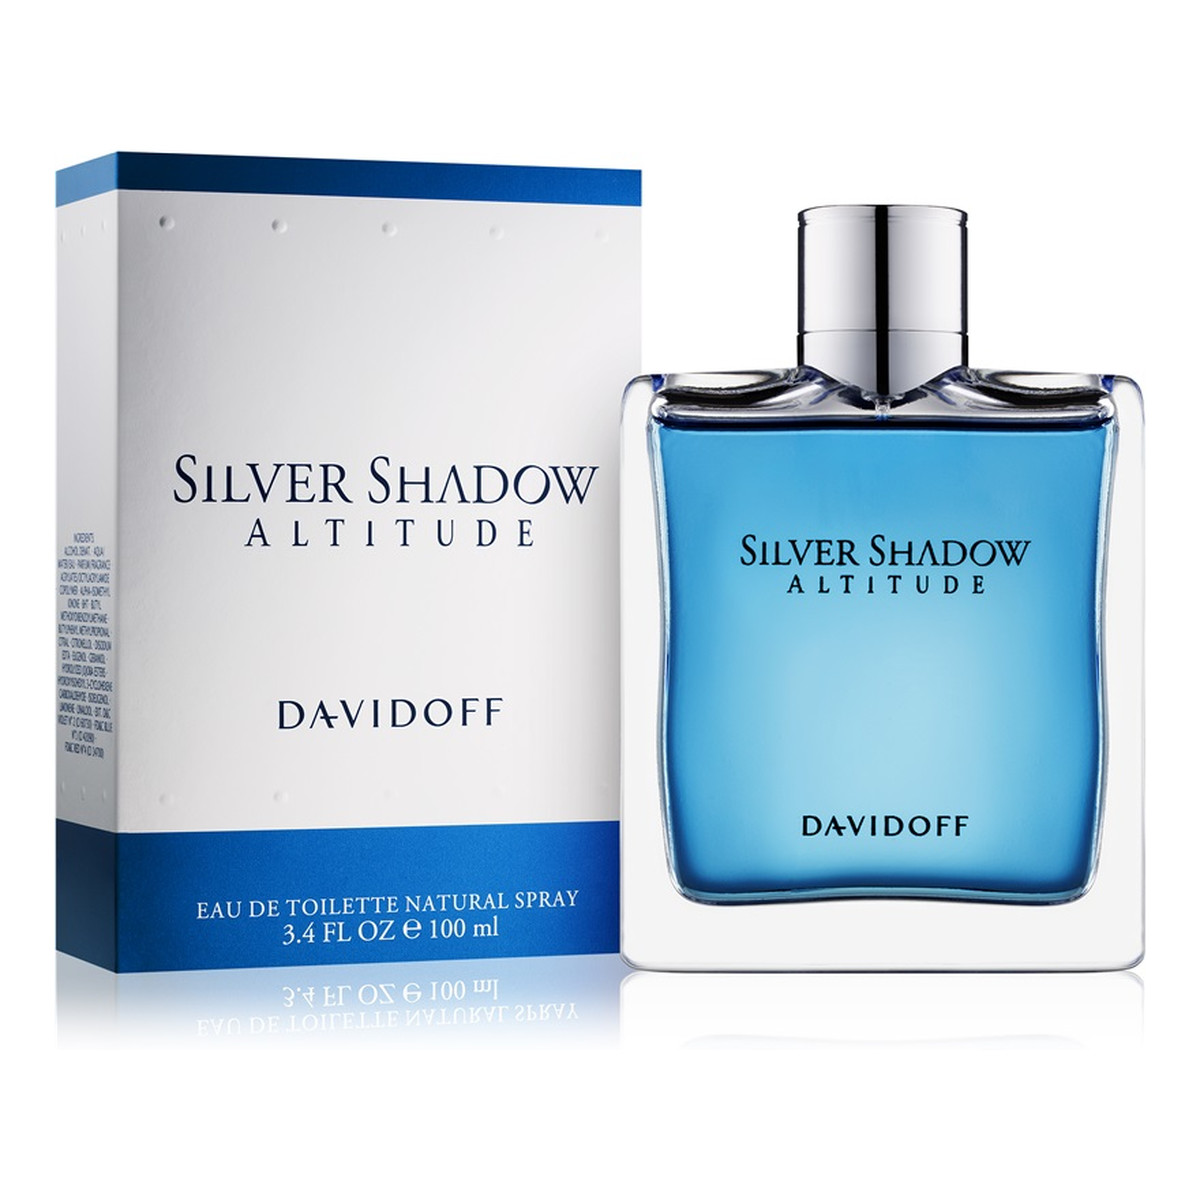 Davidoff Silver Shadow Altitude woda toaletowa dla mężczyzn 100ml